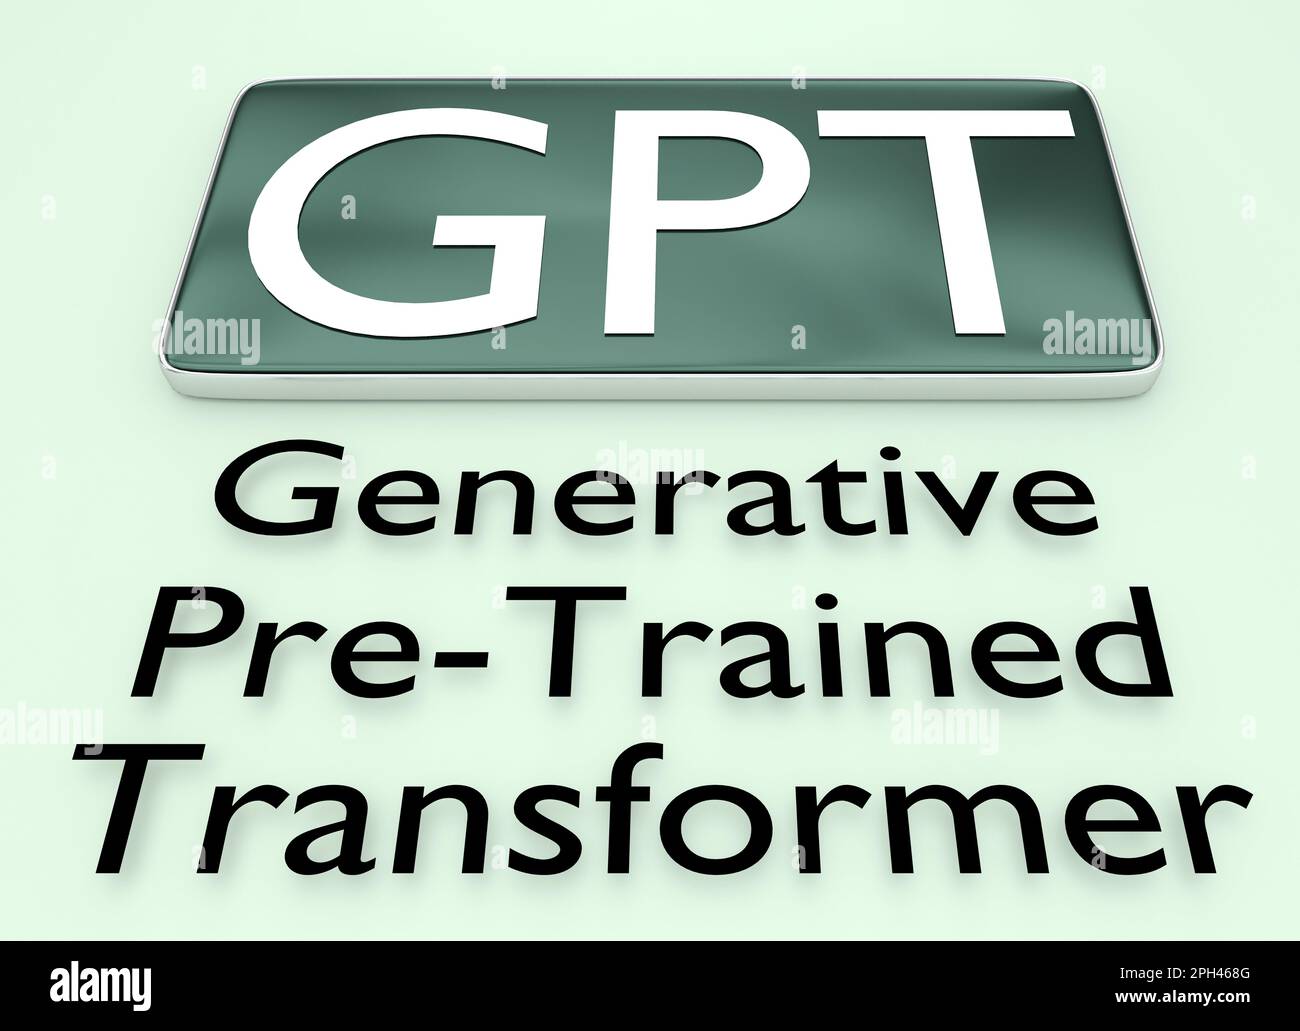 3D Abbildung des GPT-Titels auf einem Mobilbildschirm zusammen mit dem Skript Generative Pre-Training Transformer, isoliert auf hellgrünem Hintergrund. Stockfoto